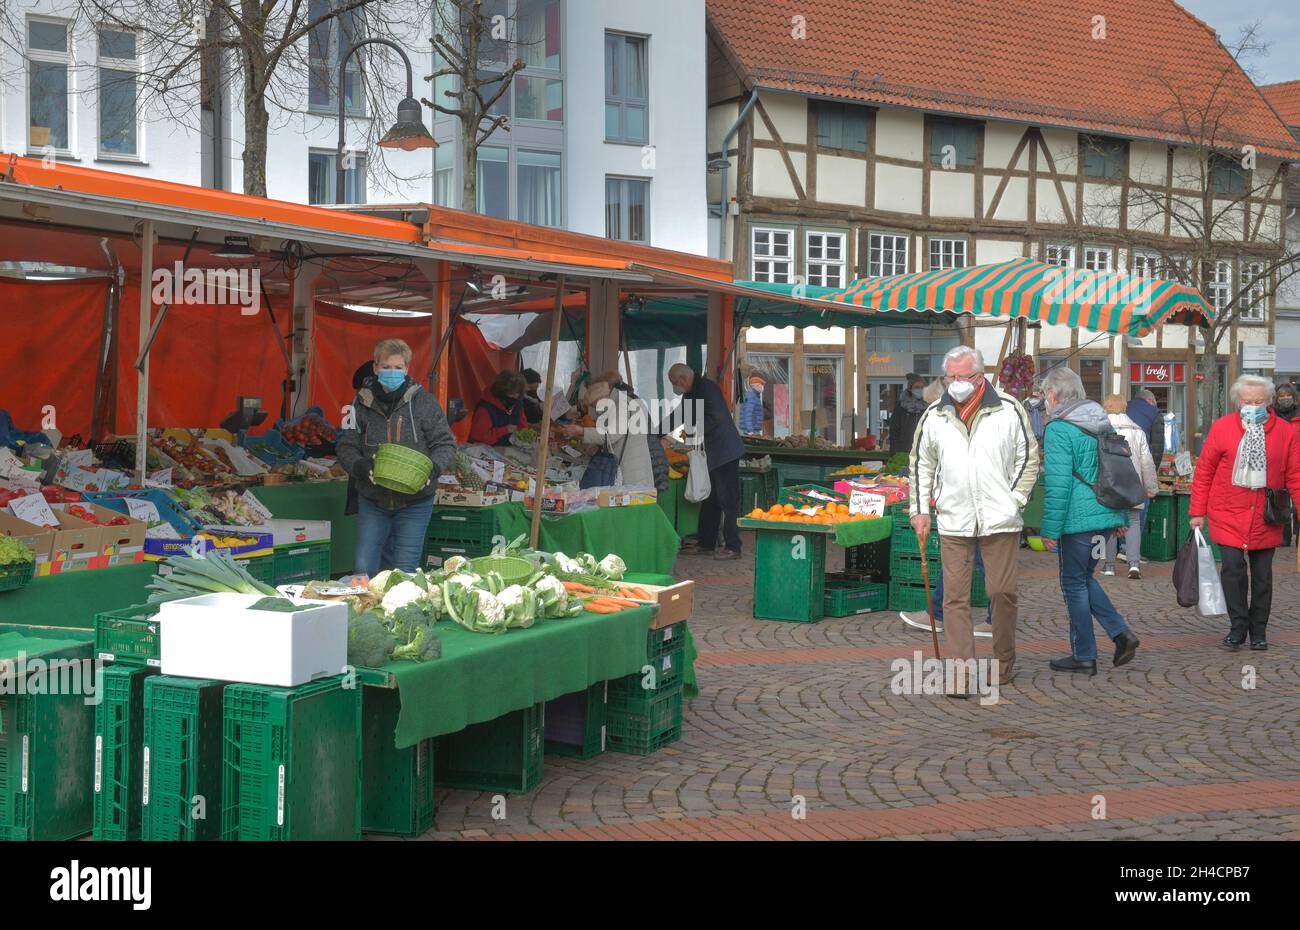 Wochenmarkt, Bad Salzuflen, Kreis Lippe, Ostwestfalen, Nordrhein-Westfalen, Deutschland Stock Photo